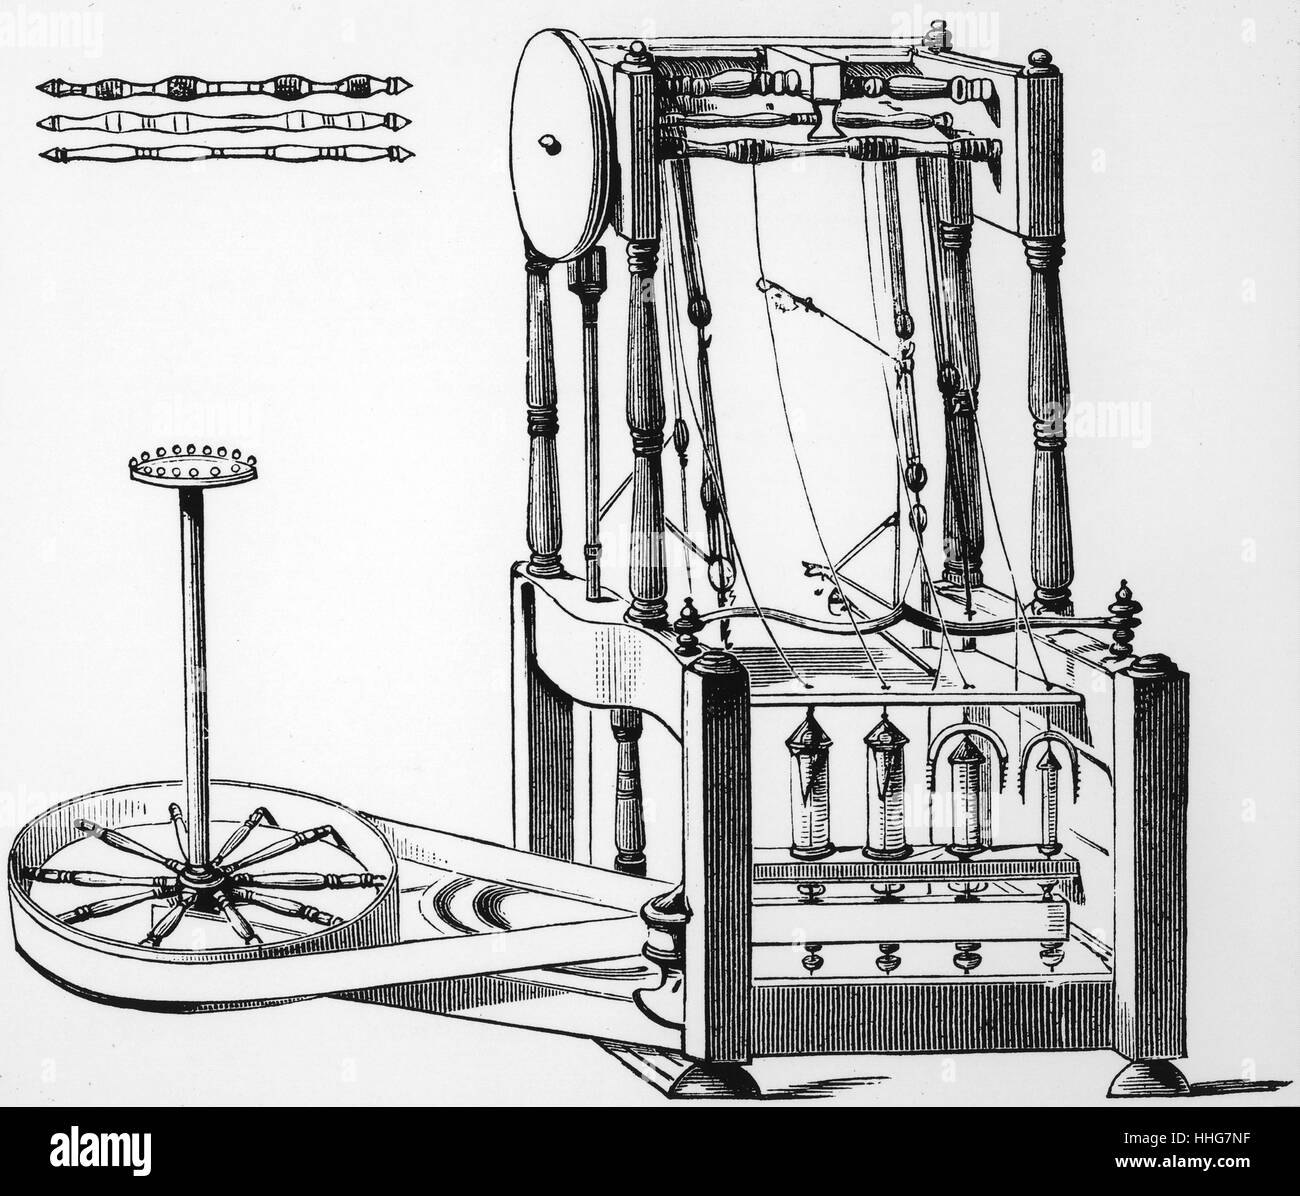 L'eau du schéma d'Arkwright cadre ; 1878. L'eau est le nom donné à un châssis tournant fonctionnant à l'eau qui a été un moyen facile de créer des fil de coton. La première fois que la machine a été utilisée en 1768. Il a été en mesure de tourner 128 threads à la fois ; ce qui était le plus facile et plus rapide que jamais. Il a été mis au point par Richard Arkwright, qui a breveté la technologie en 1767 Banque D'Images